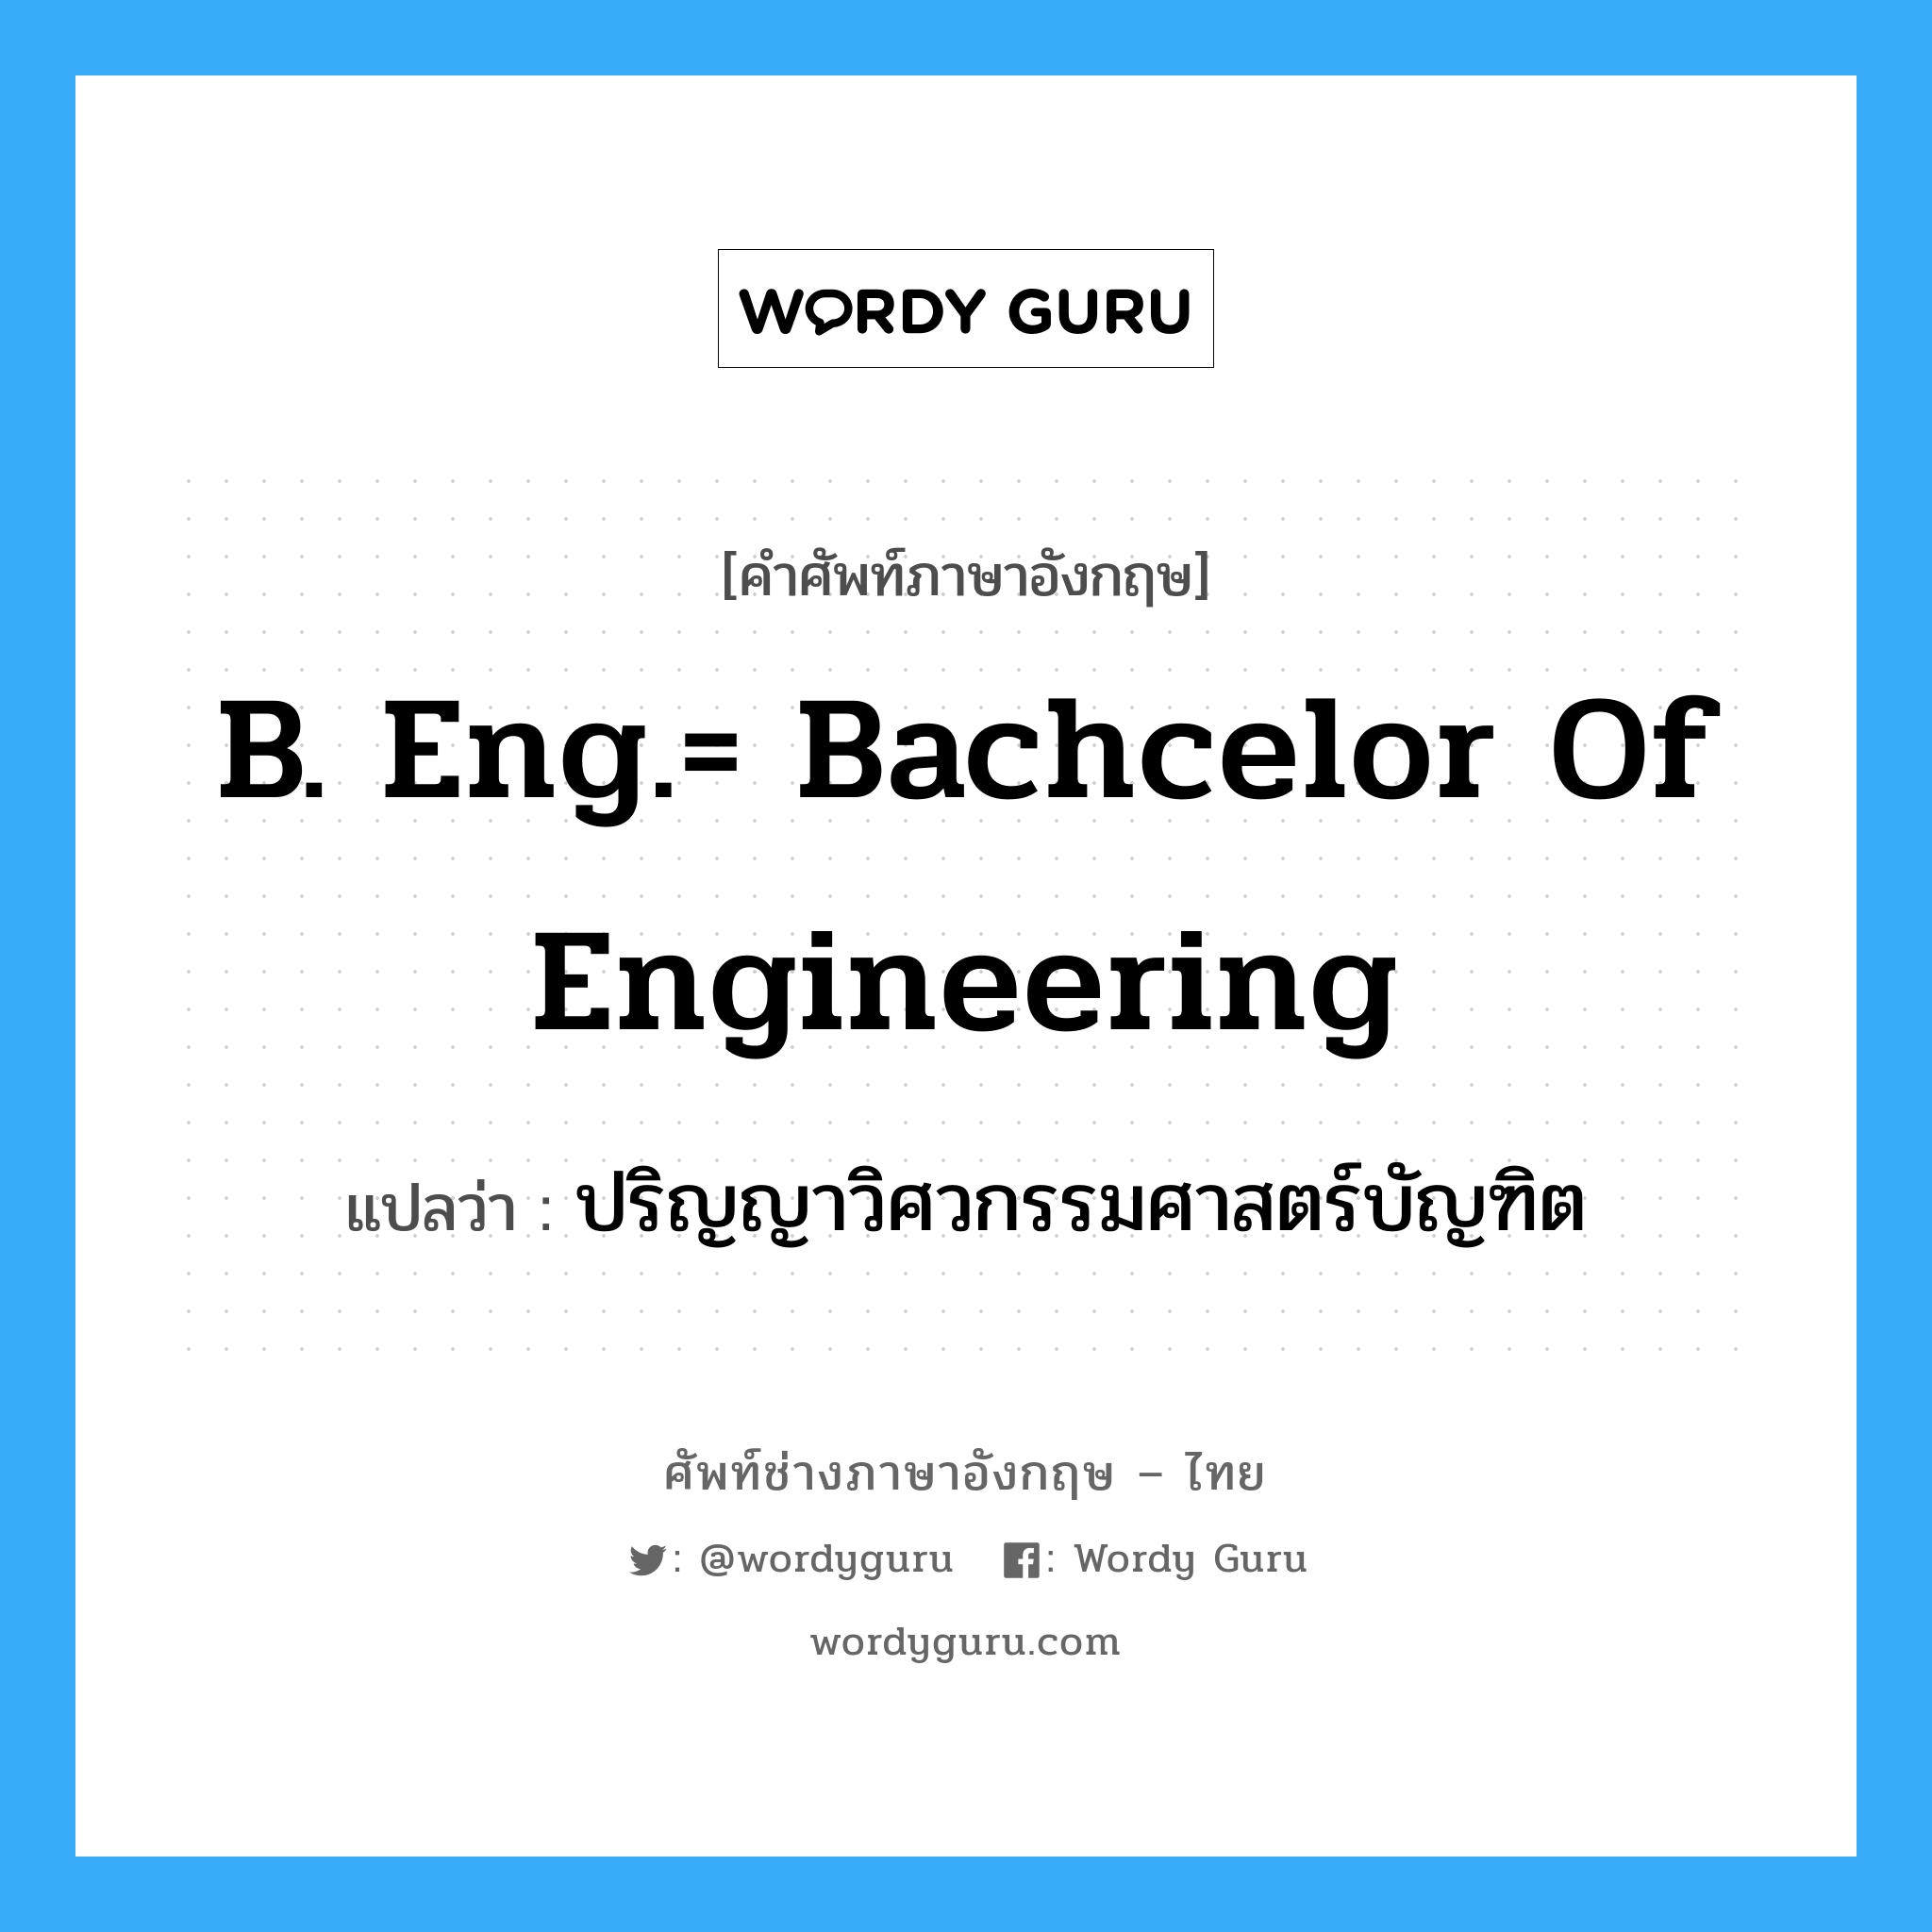 ปริญญาวิศวกรรมศาสตร์บัญฑิต ภาษาอังกฤษ?, คำศัพท์ช่างภาษาอังกฤษ - ไทย ปริญญาวิศวกรรมศาสตร์บัญฑิต คำศัพท์ภาษาอังกฤษ ปริญญาวิศวกรรมศาสตร์บัญฑิต แปลว่า B. Eng.= Bachcelor of Engineering